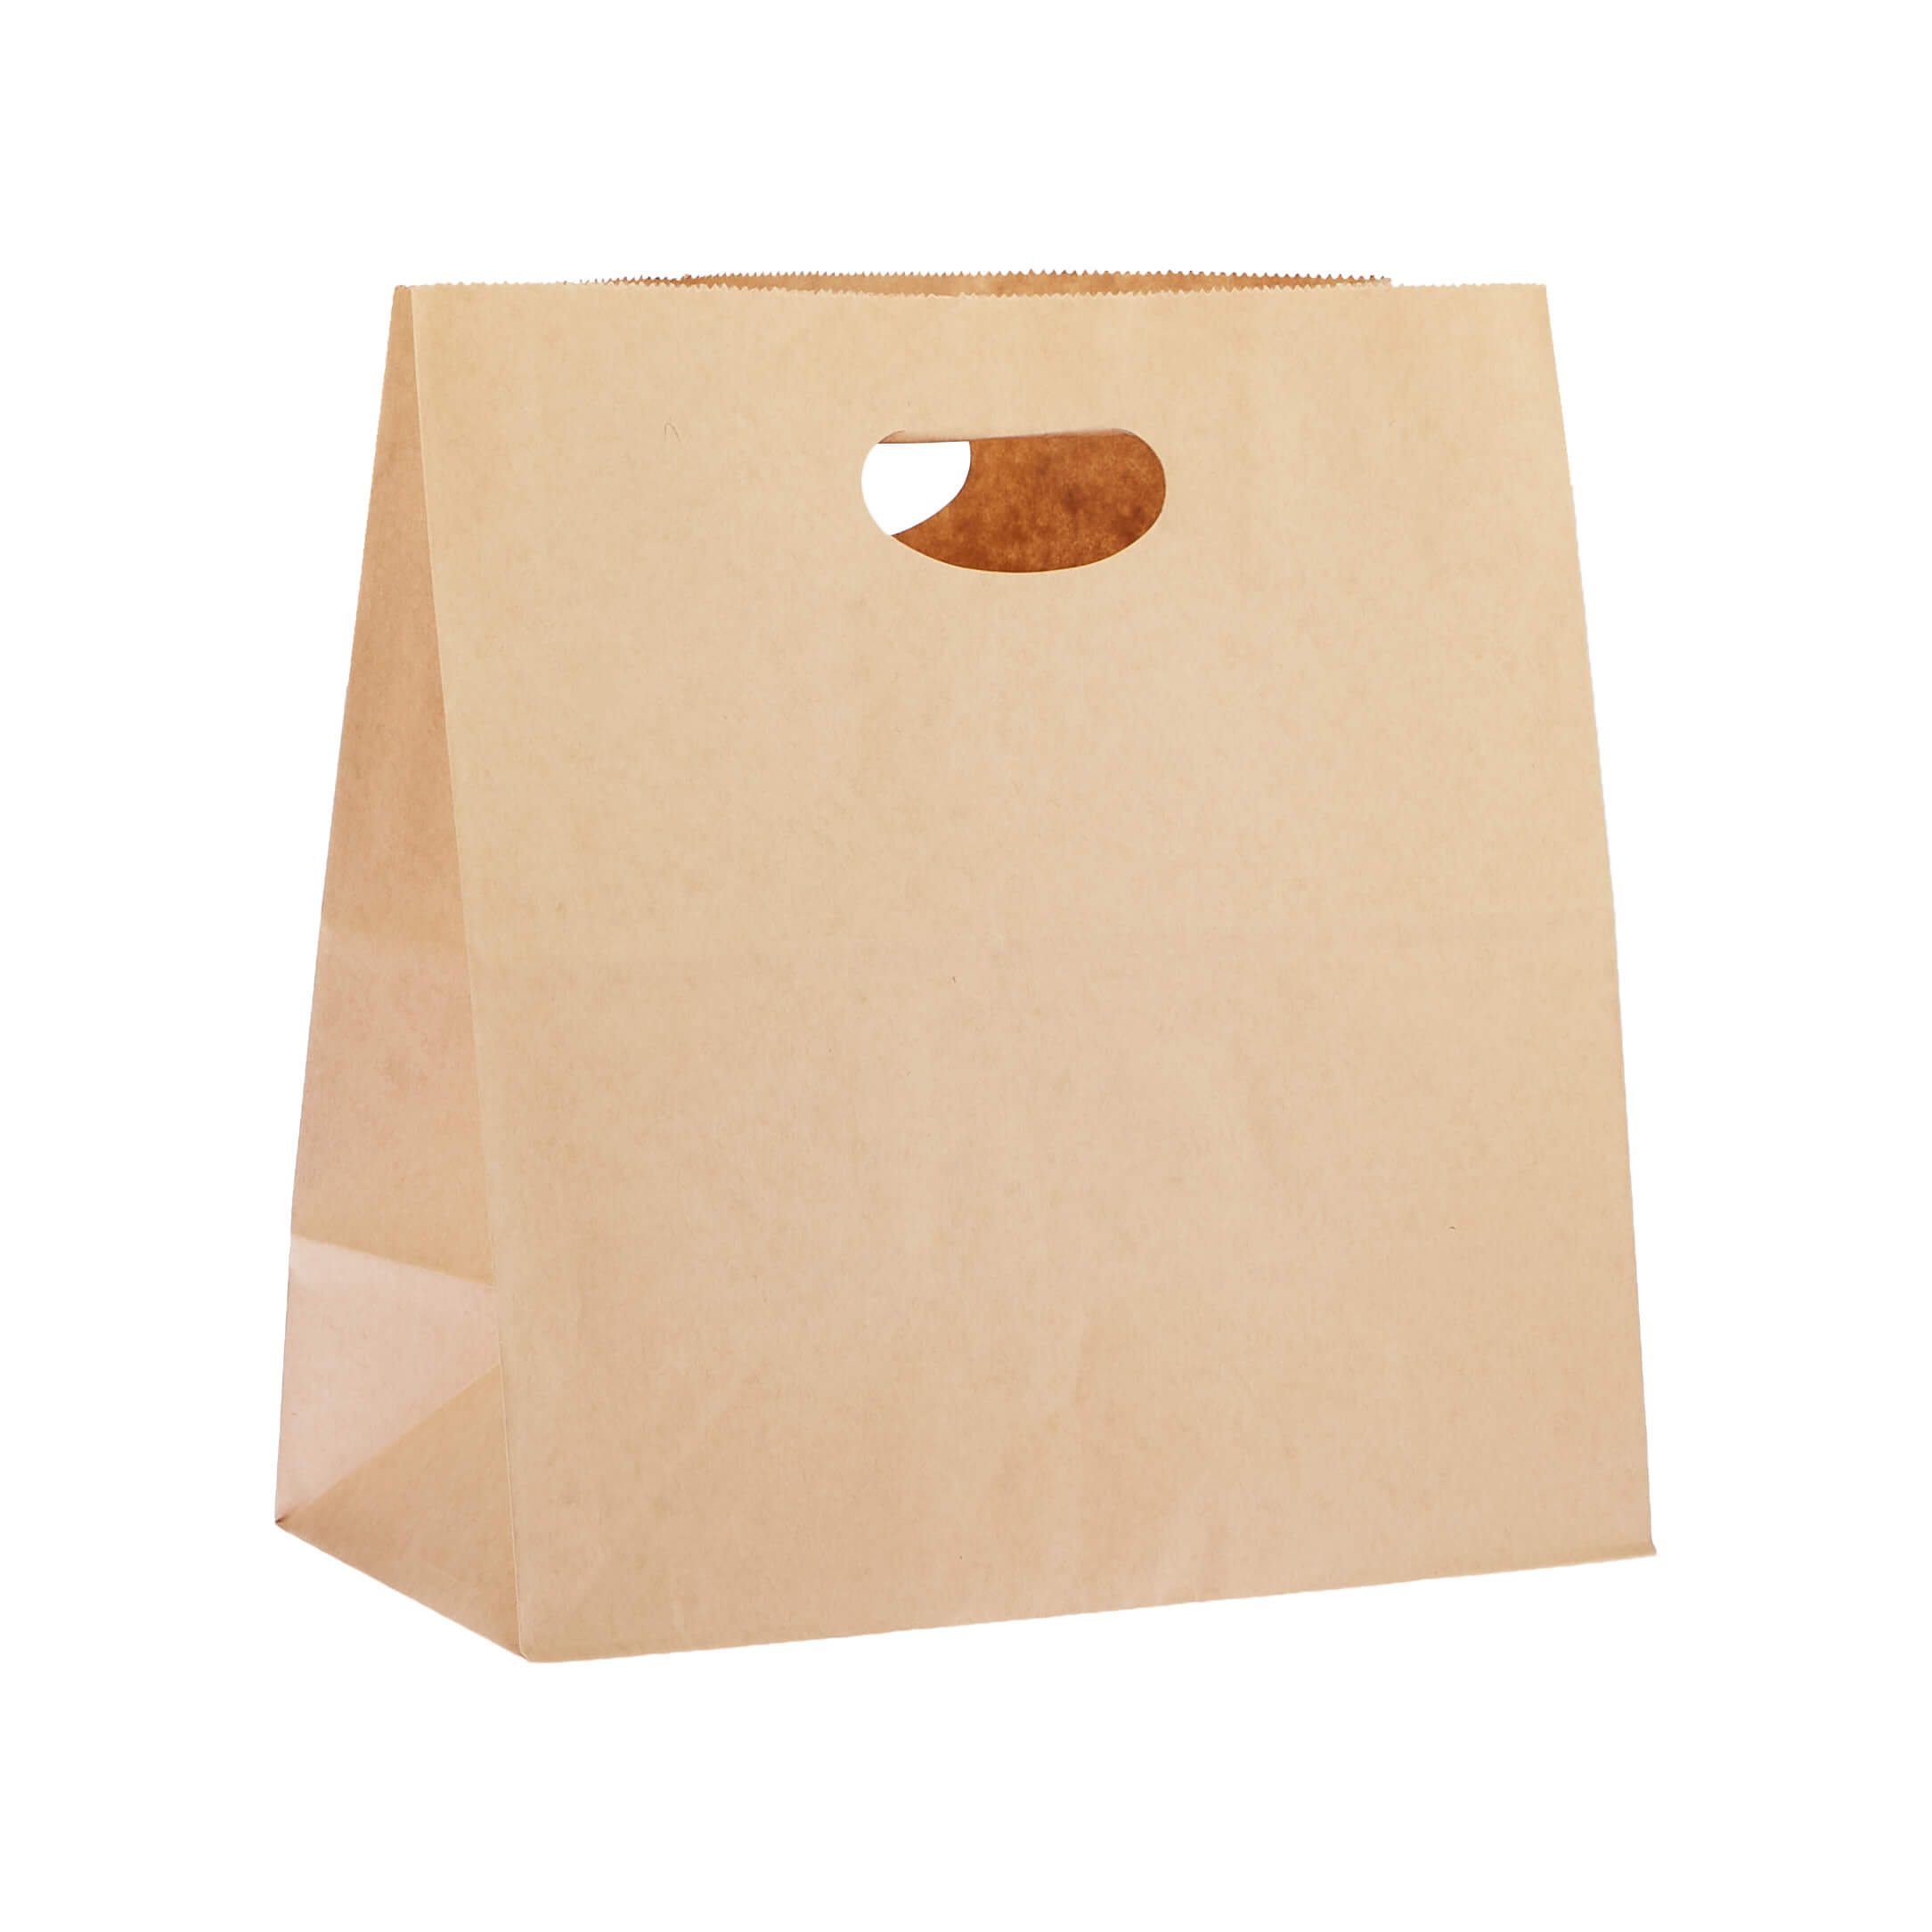 28 x 28 cm 500 Pieces Kraft Paper Bag Die Cut Handle - Hotpack Oman